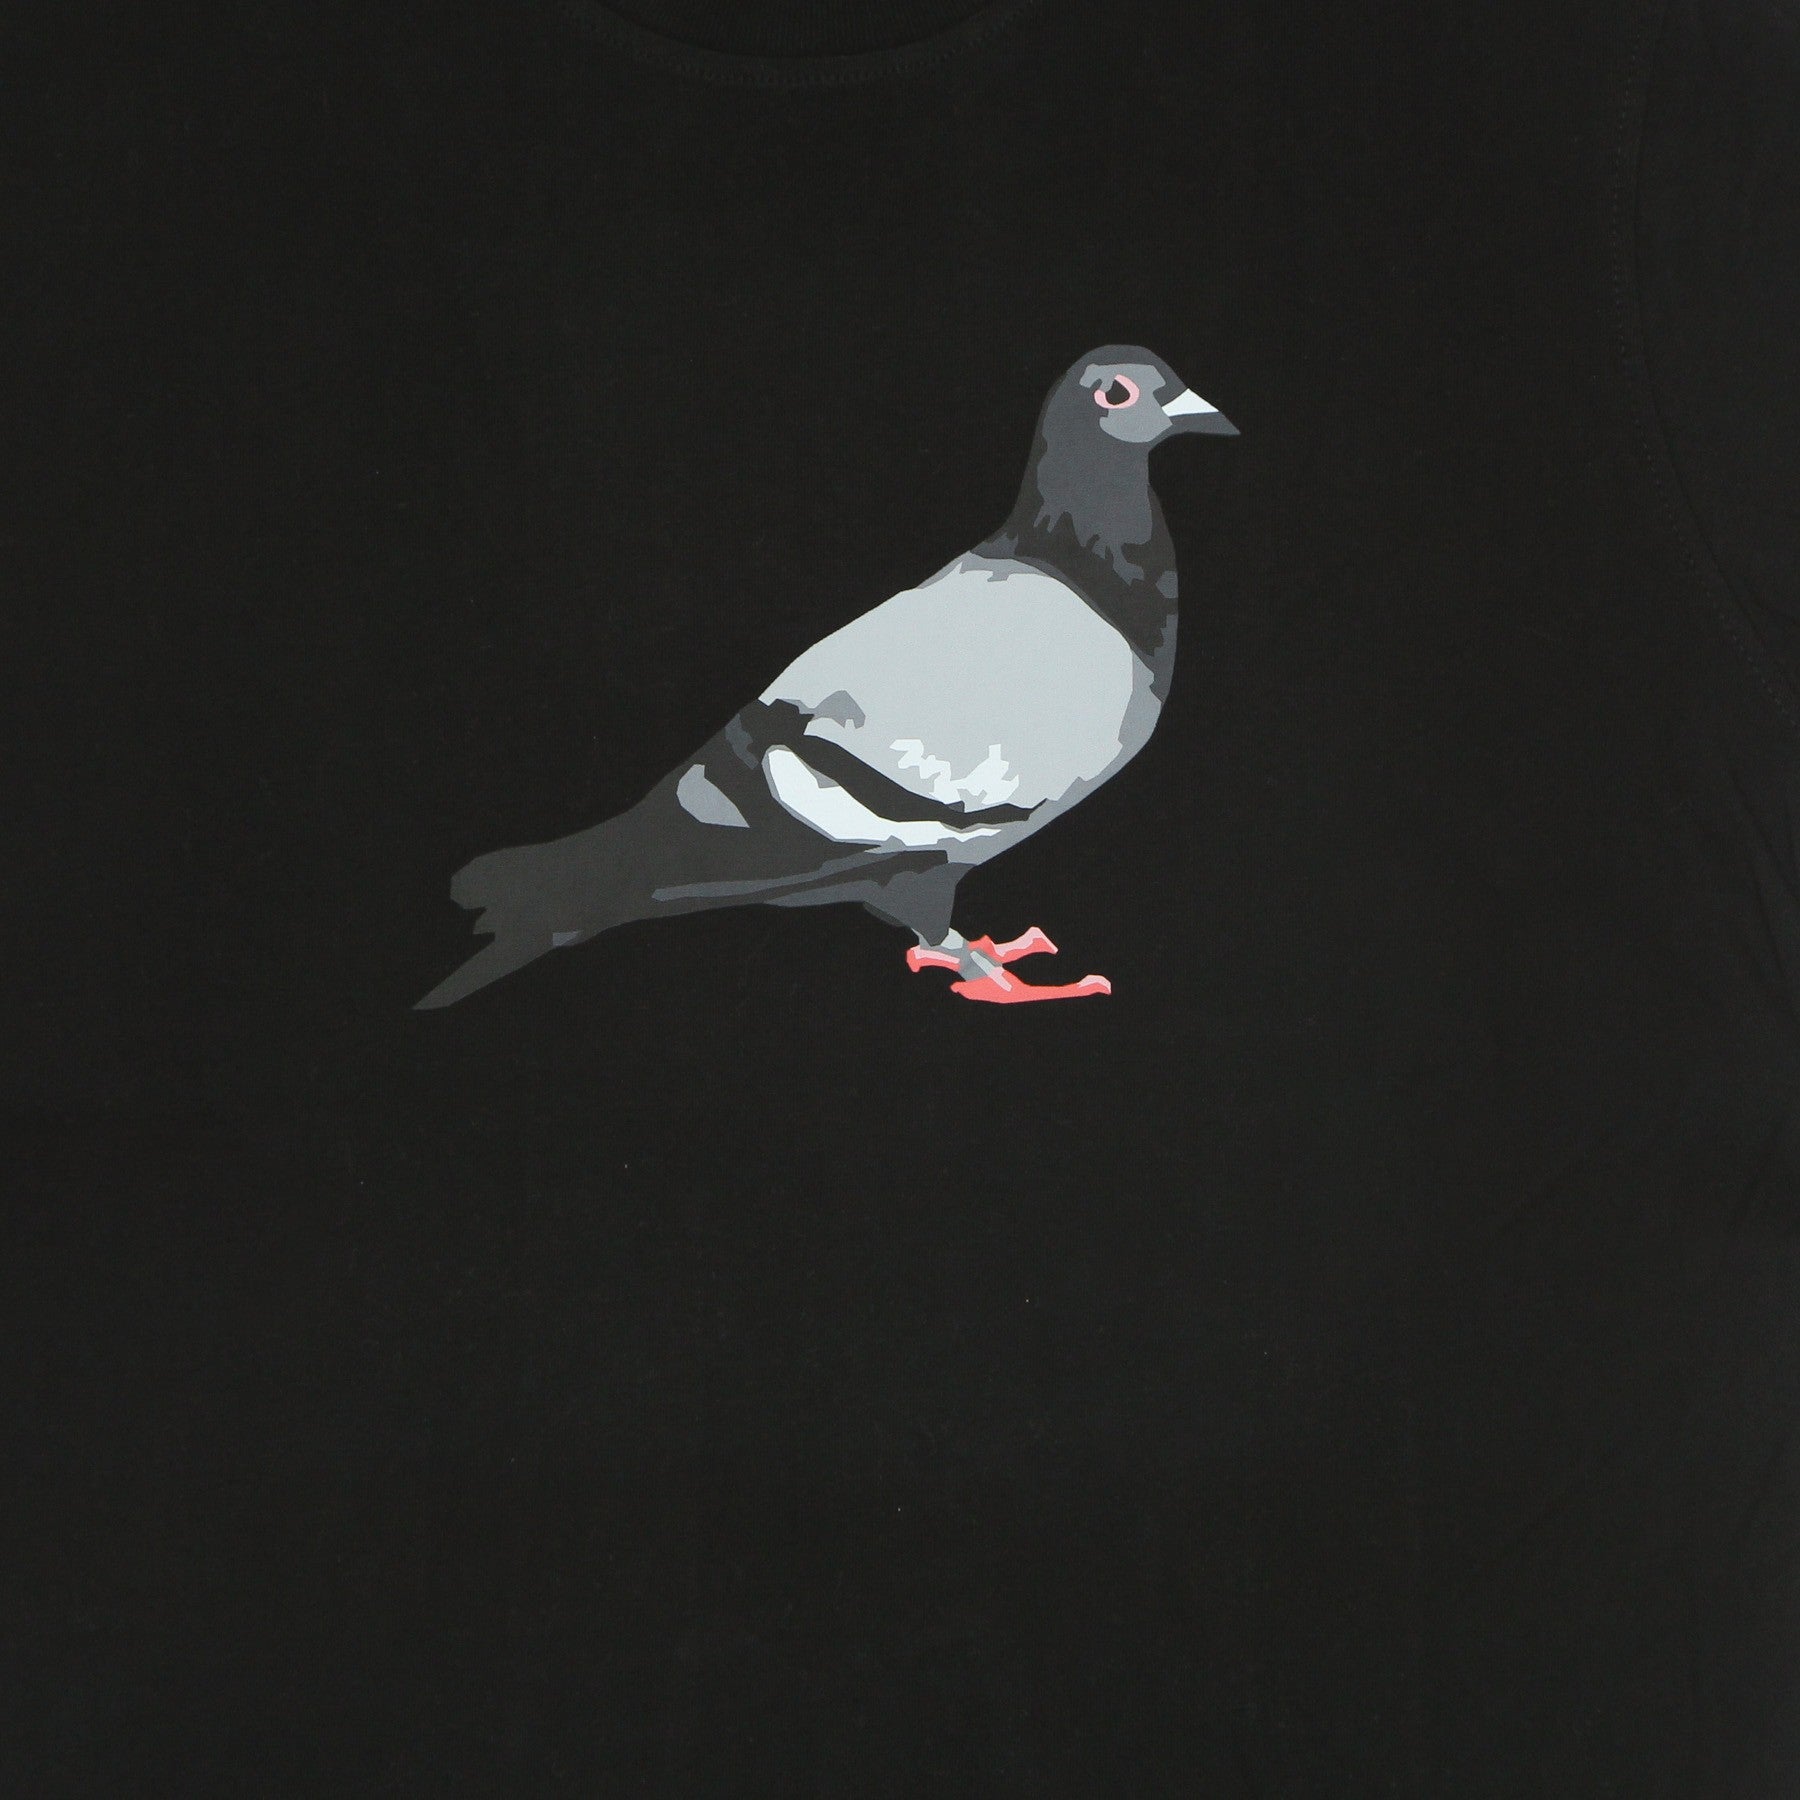 Men's T-Shirt Pigeon Logo Tee Black